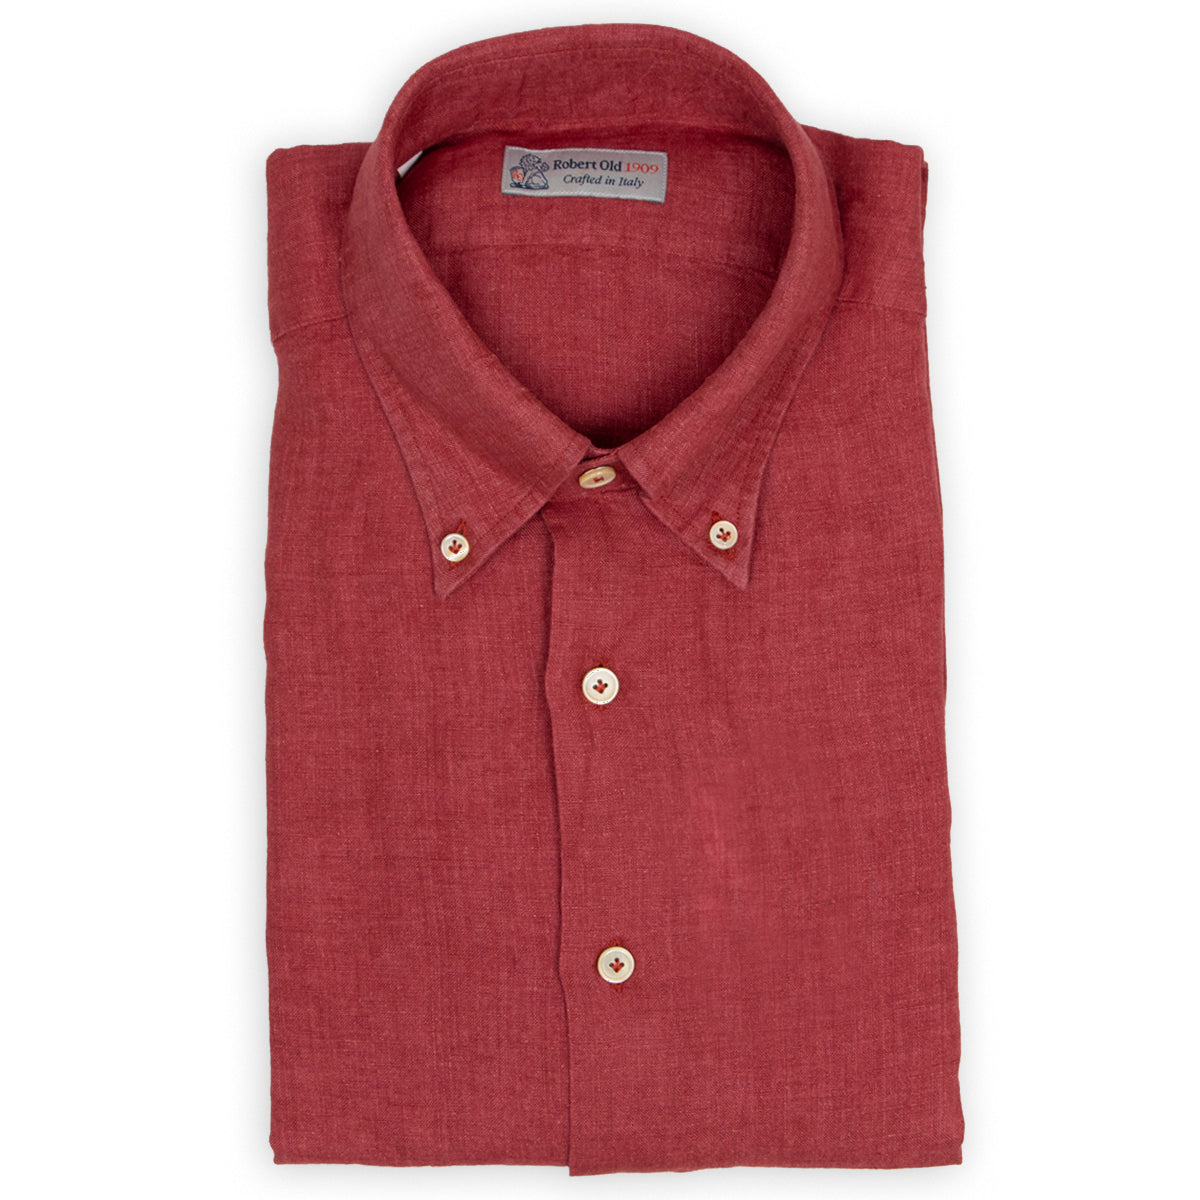 Red Linen Button-Down Long Sleeve Shirt  Robert Old   